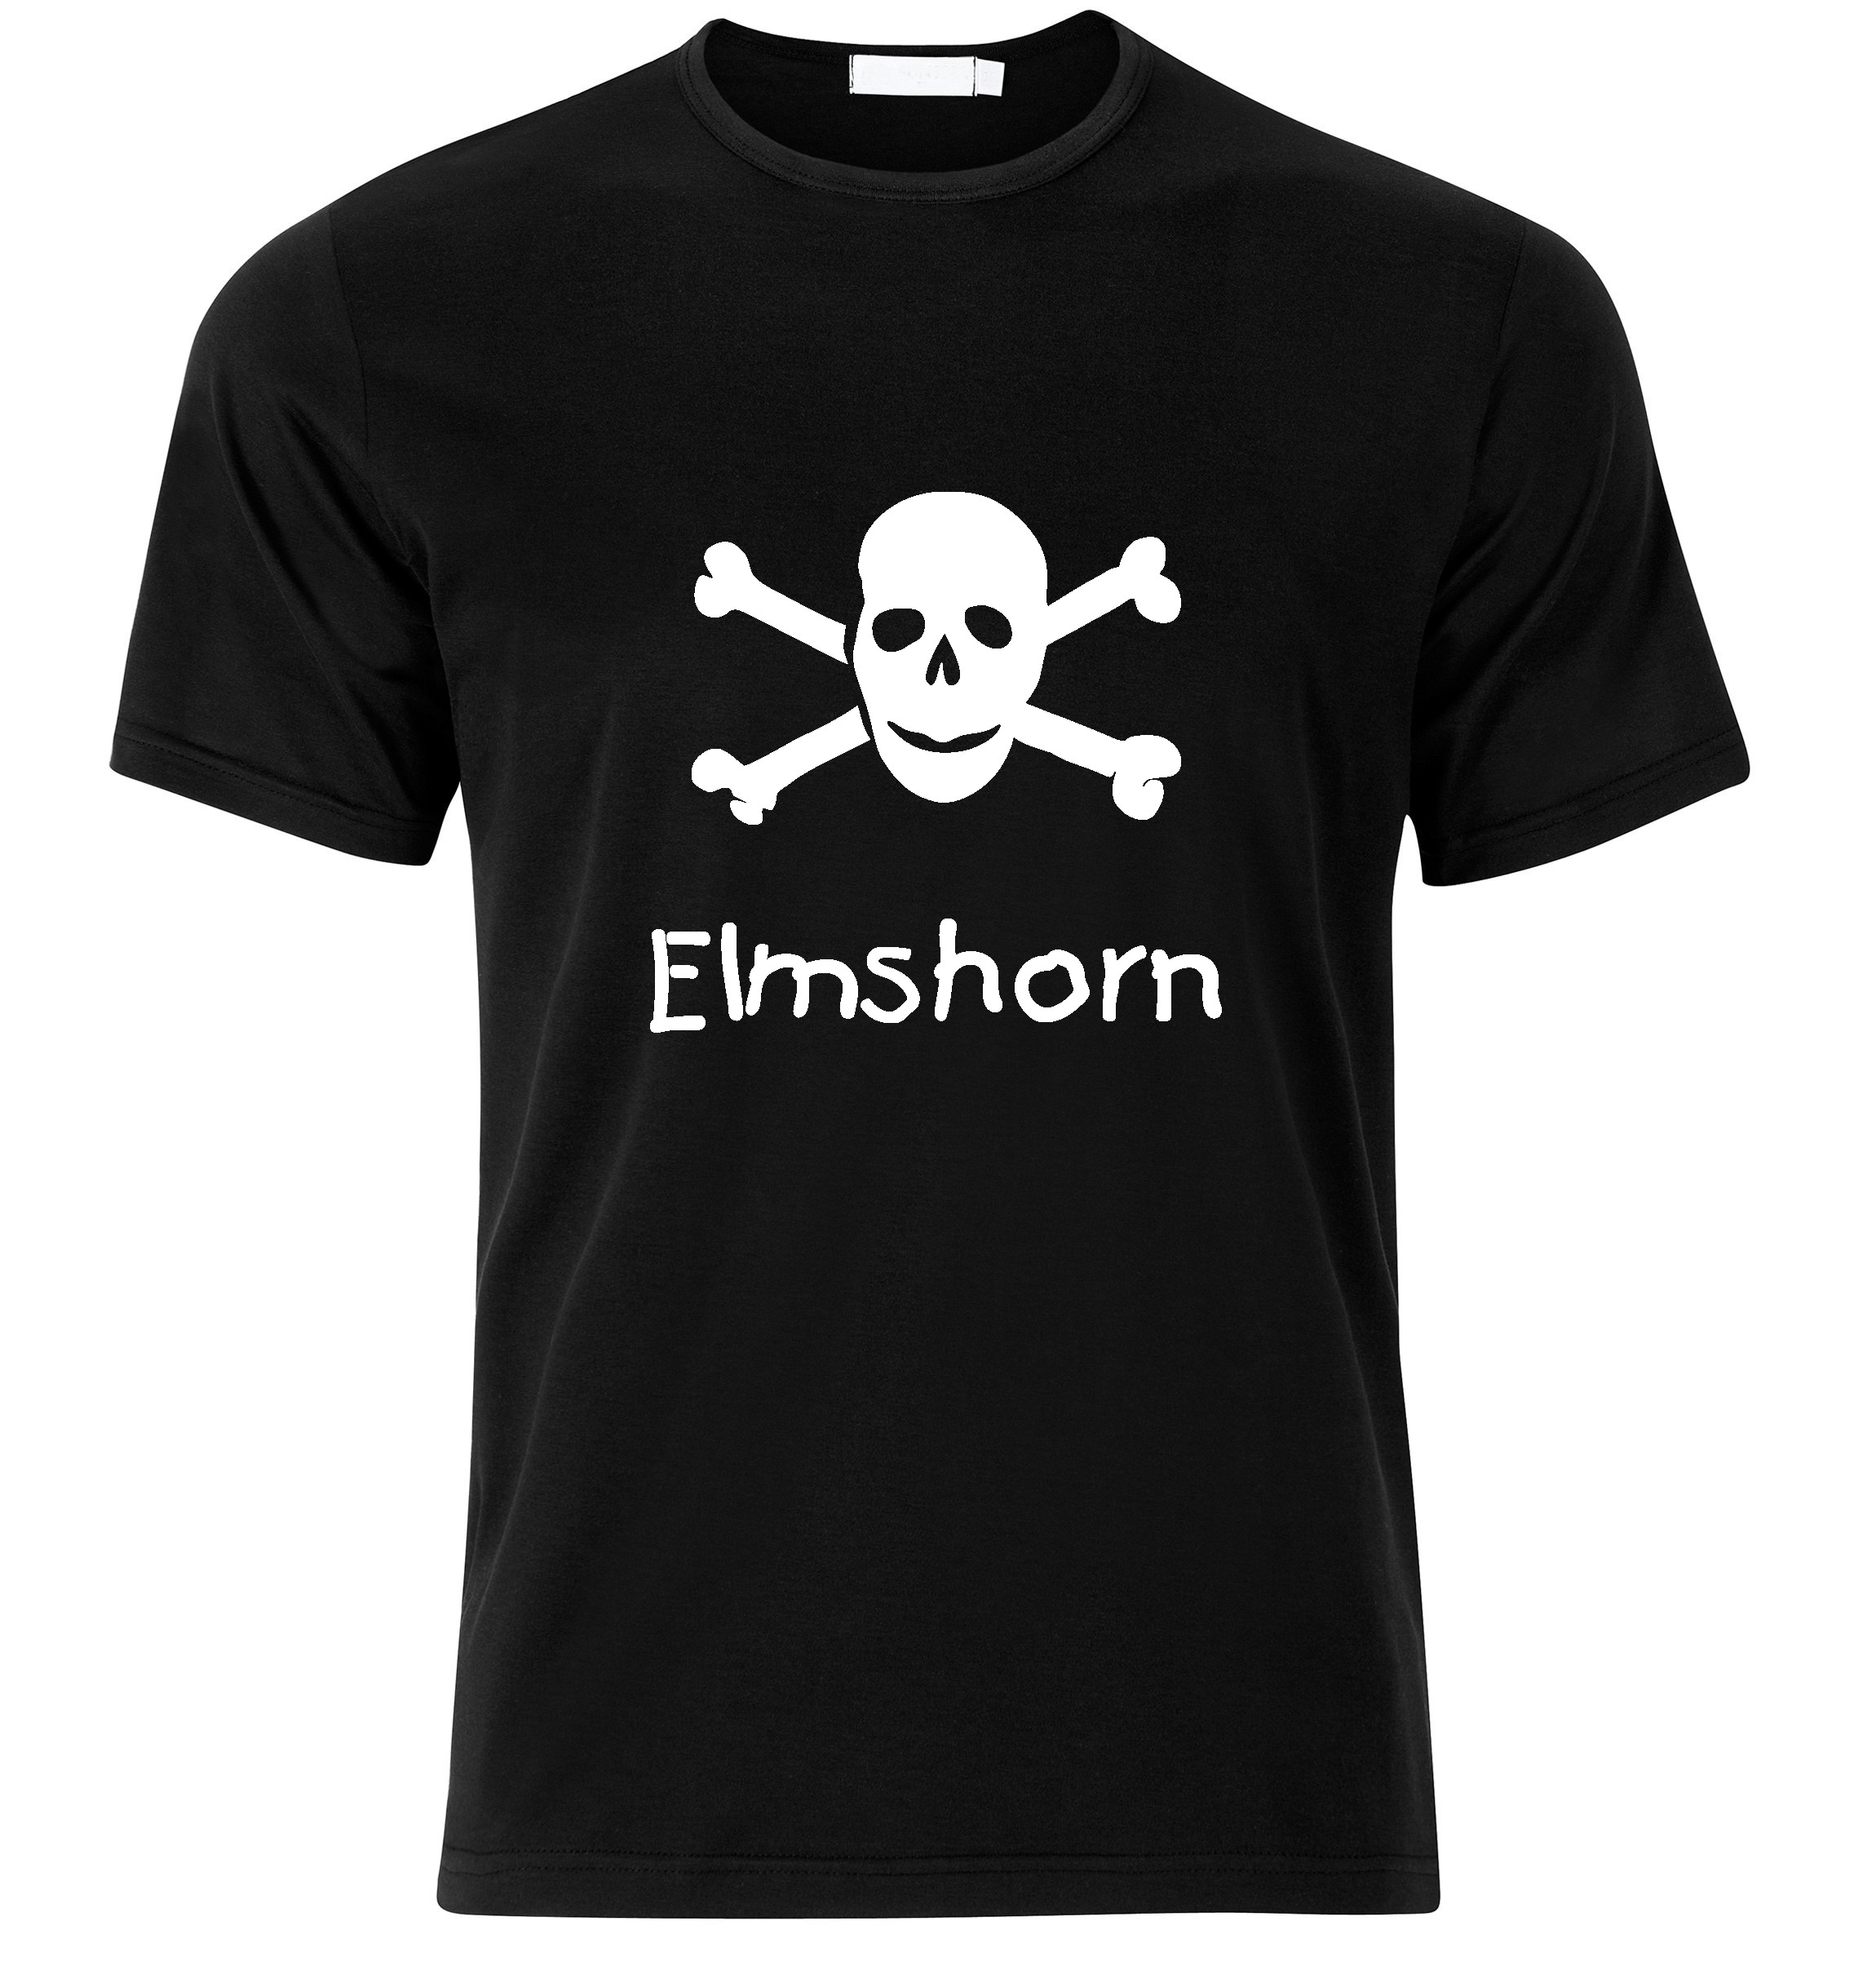 T-Shirt Elmshorn Jolly Roger, Totenkopf